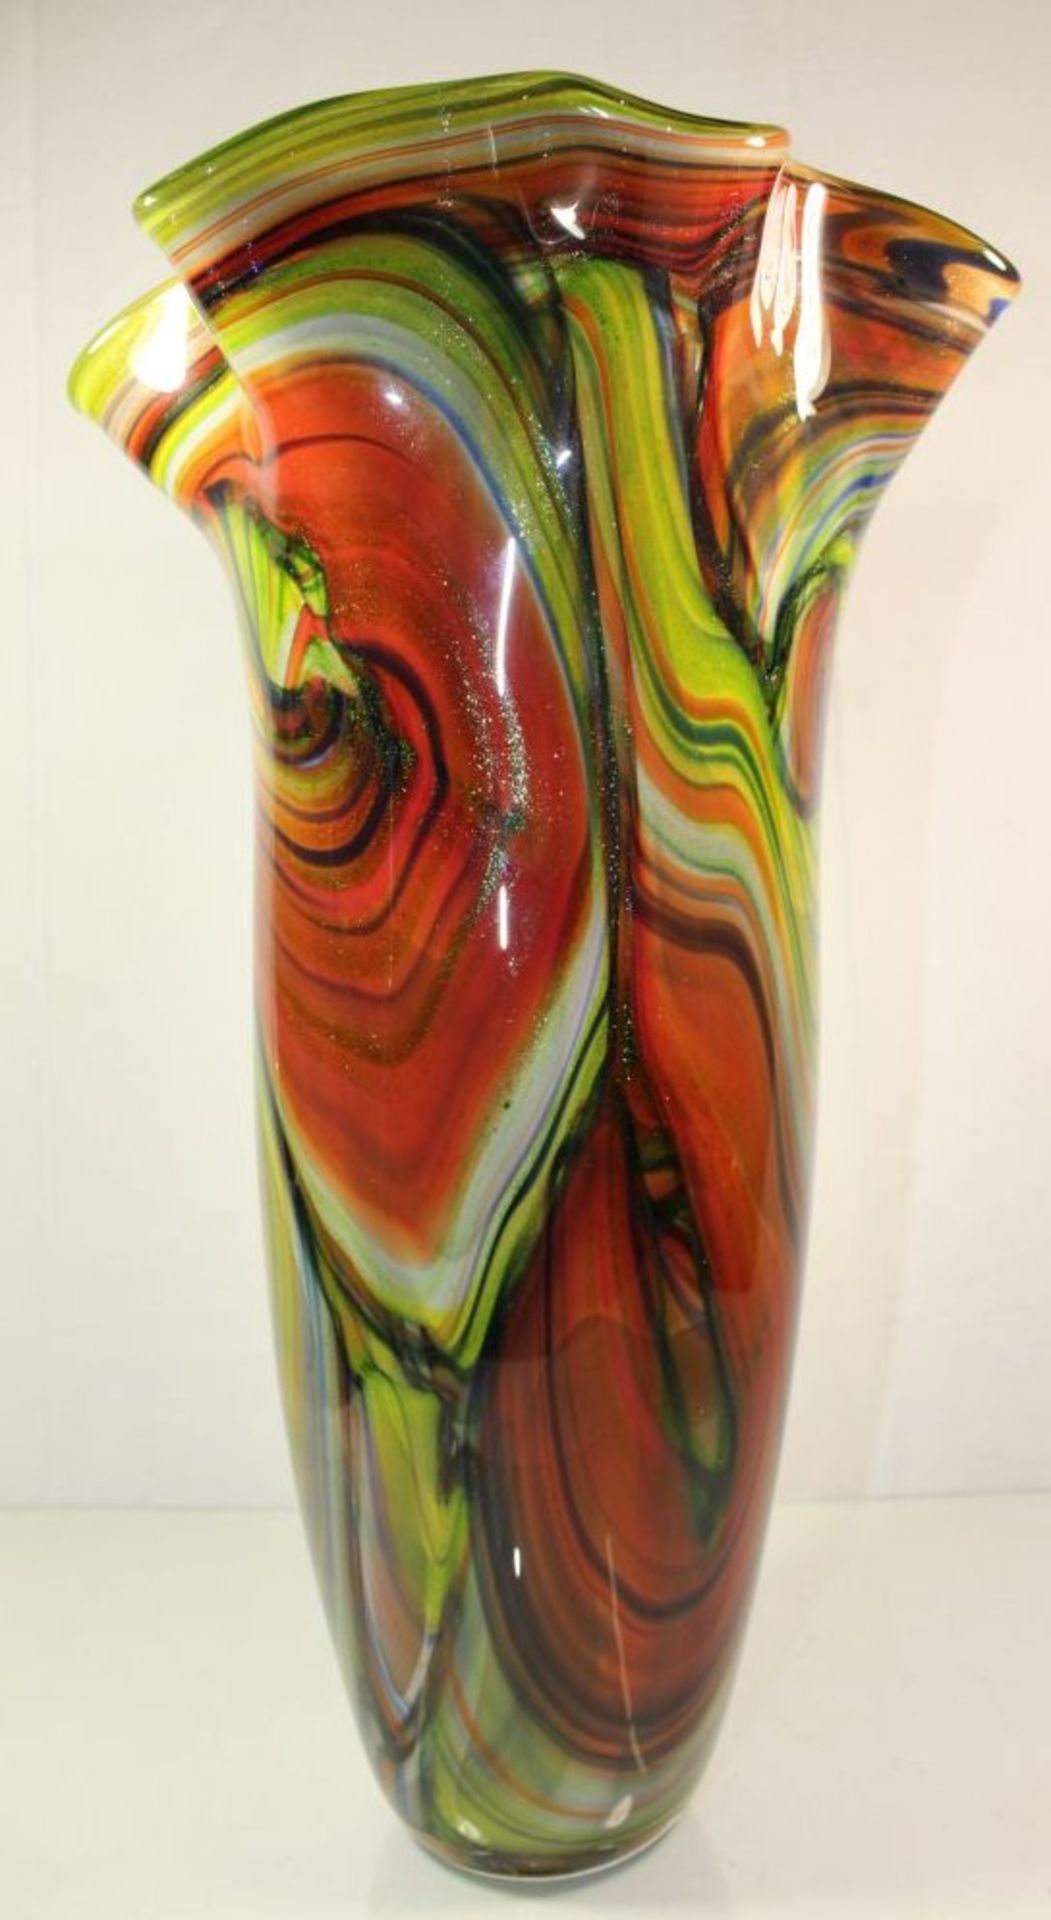 hohe Kunstglas-Vase, farbige Einschmelzungen, H-45cm.- - -22.61 % buyer's premium on the hammer - Bild 3 aus 7